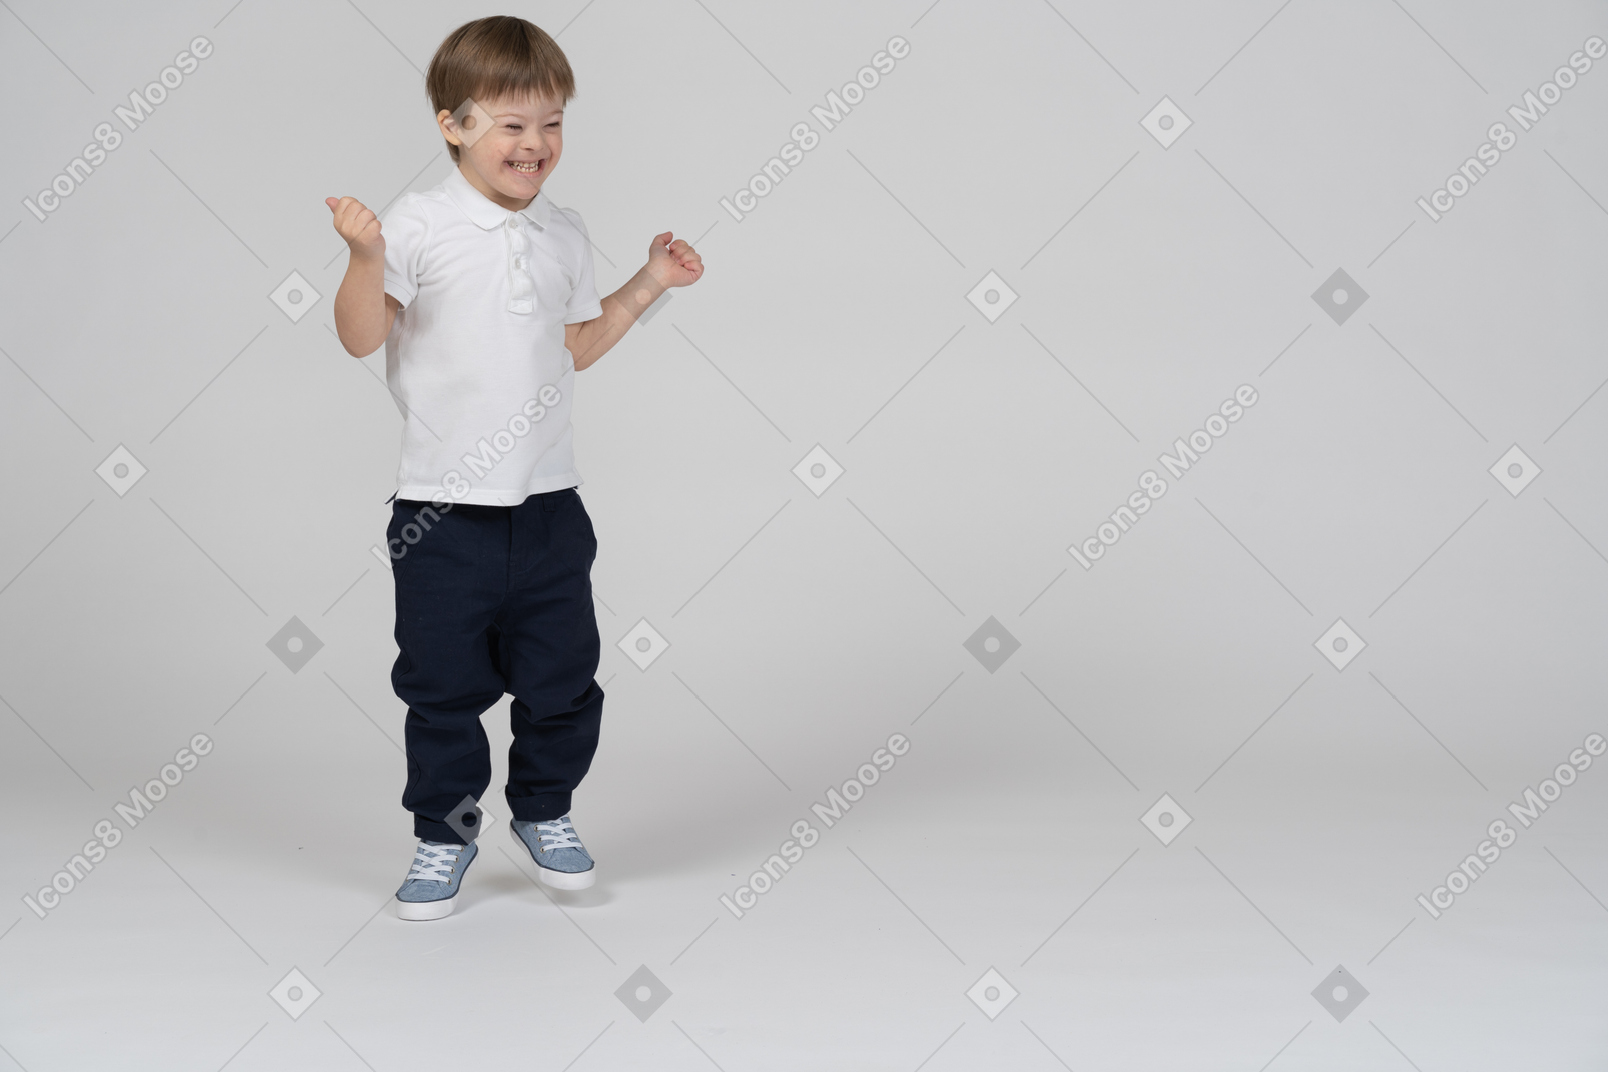 Vista frontal de un niño saltando y sonriendo alegremente